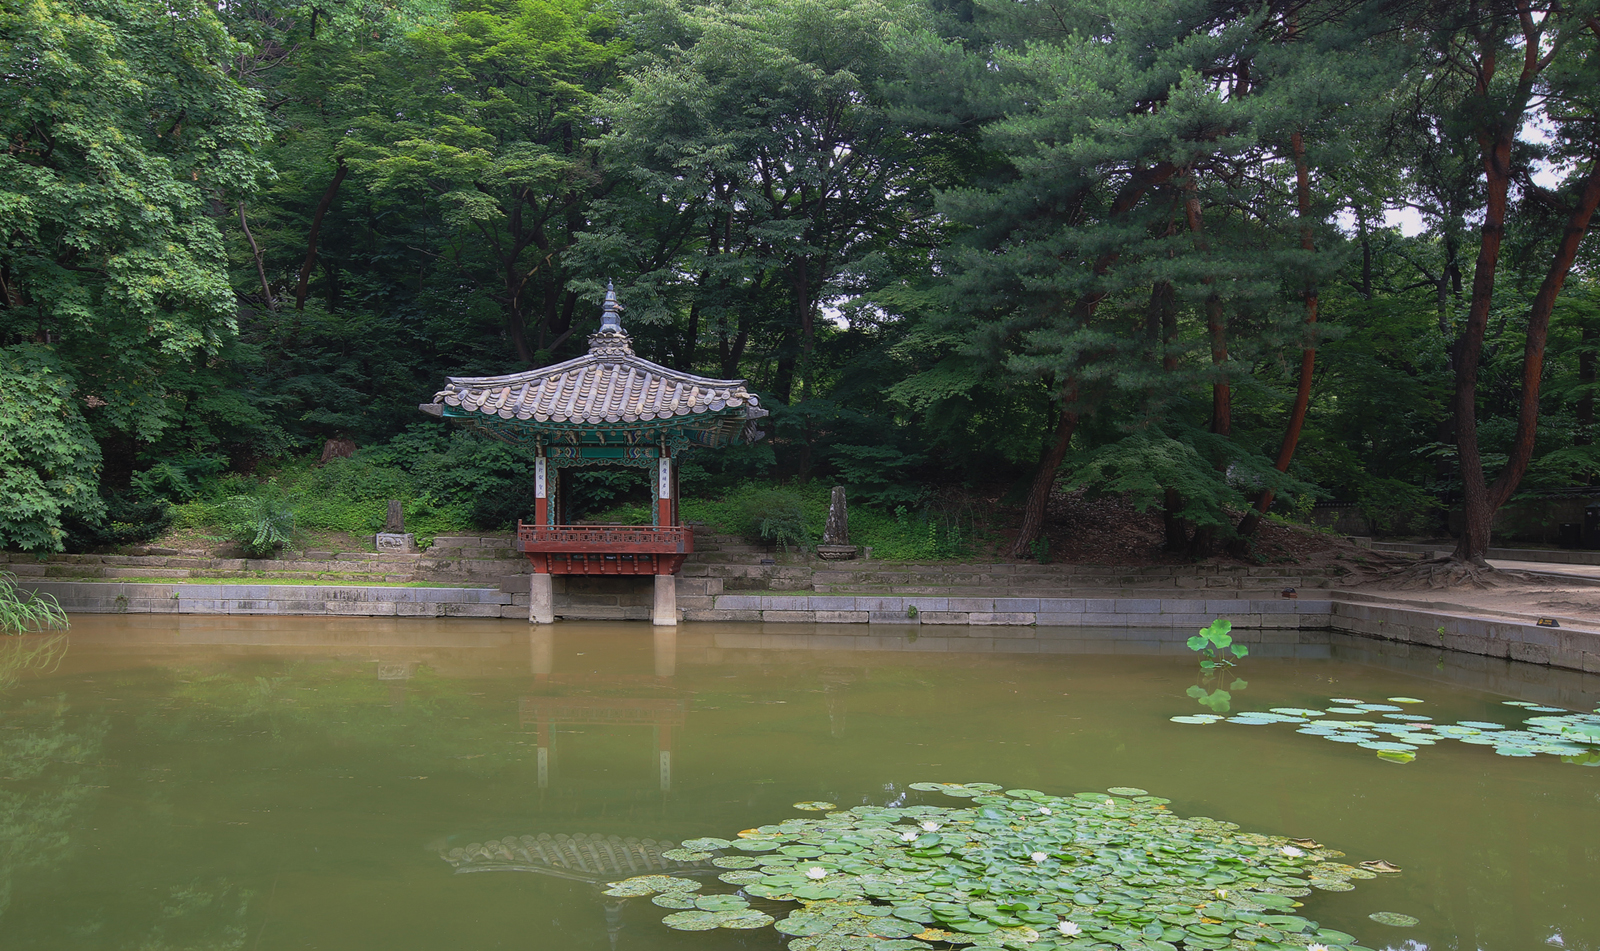 Mãn nhãn với nét đẹp huyền bí của khu vườn Biwon (Hàn Quốc)